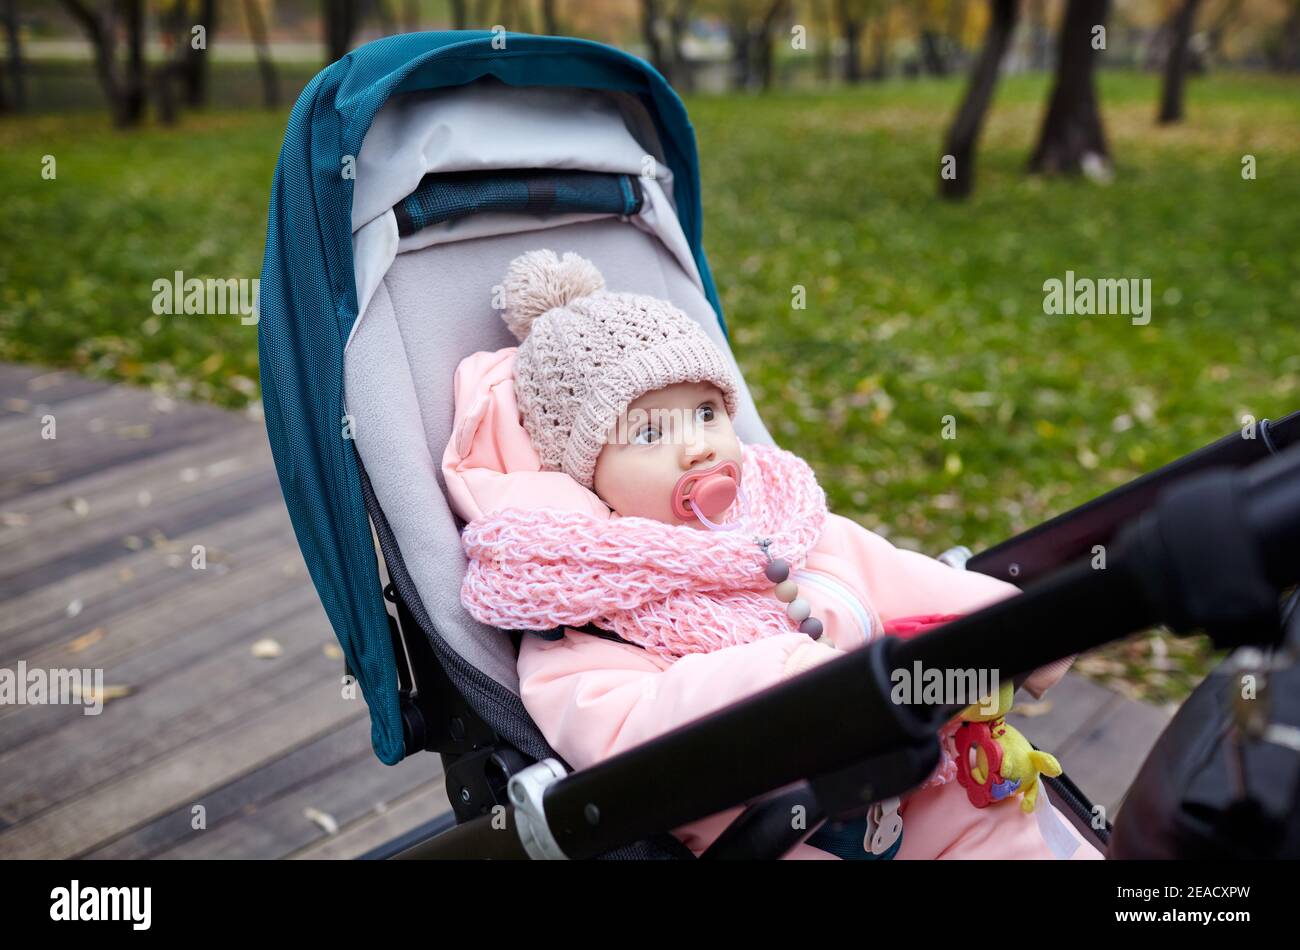 Bébé dans une poussette lors d'une promenade dans le parc d'automne. Adorable petite fille dans des vêtements chauds assis dans une poussette bleue. Enfant avec mamelon en buggy Banque D'Images